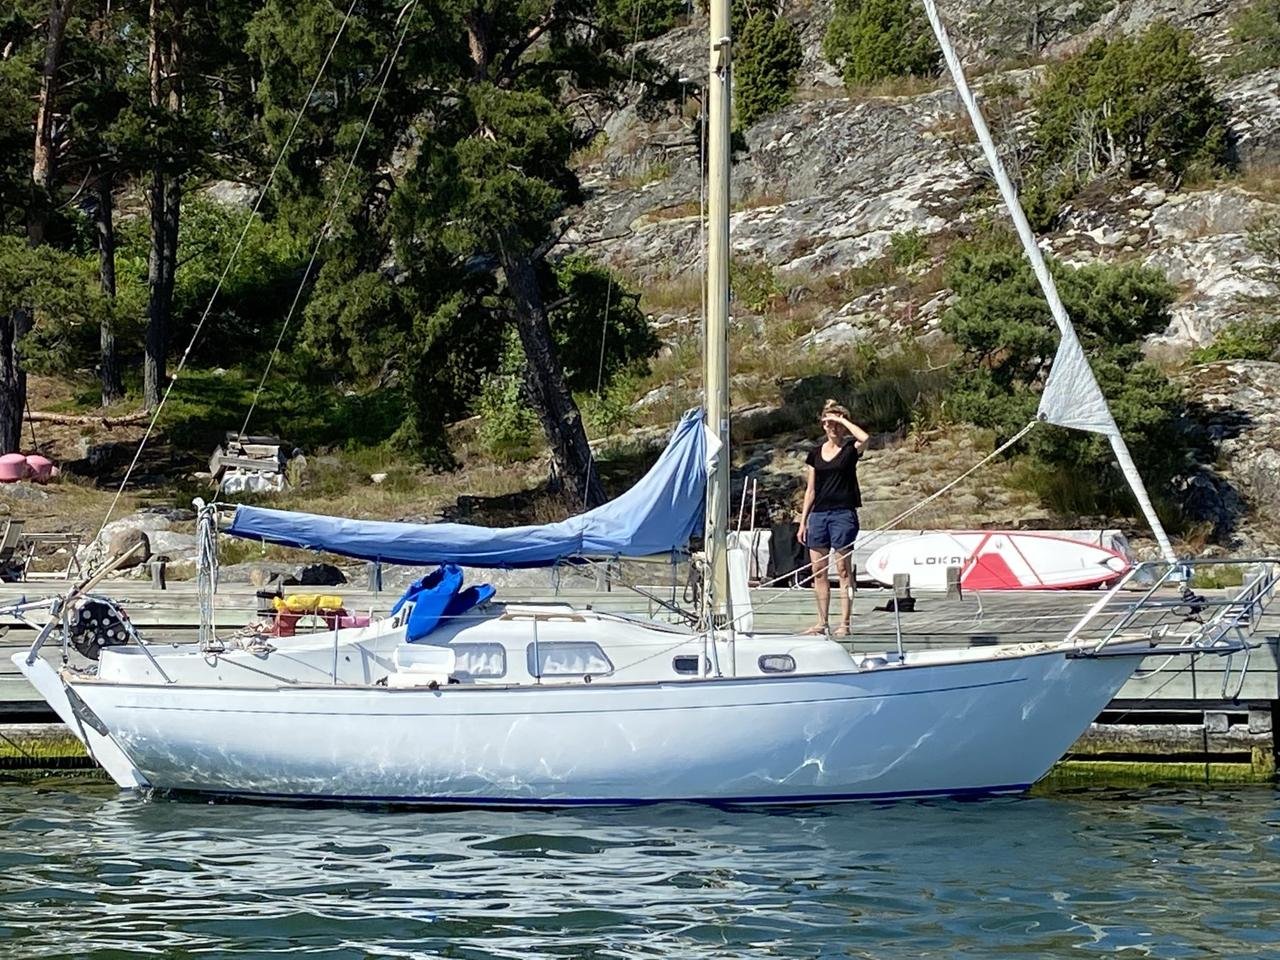 amigo 27 sailboat